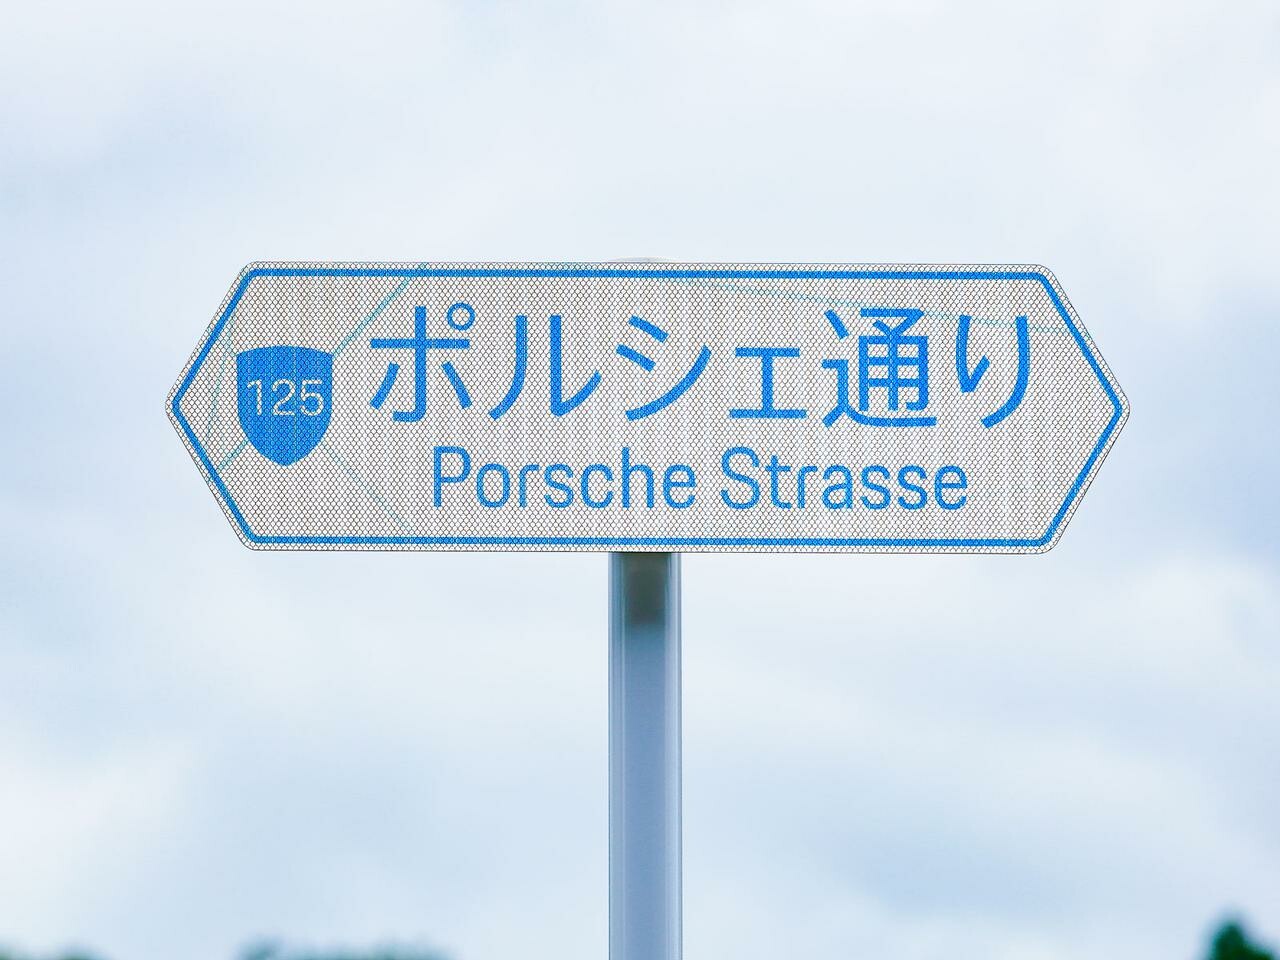 「ポルシェ通り」が木更津に出現。輸入車ブランドとして初のネーミングライツ